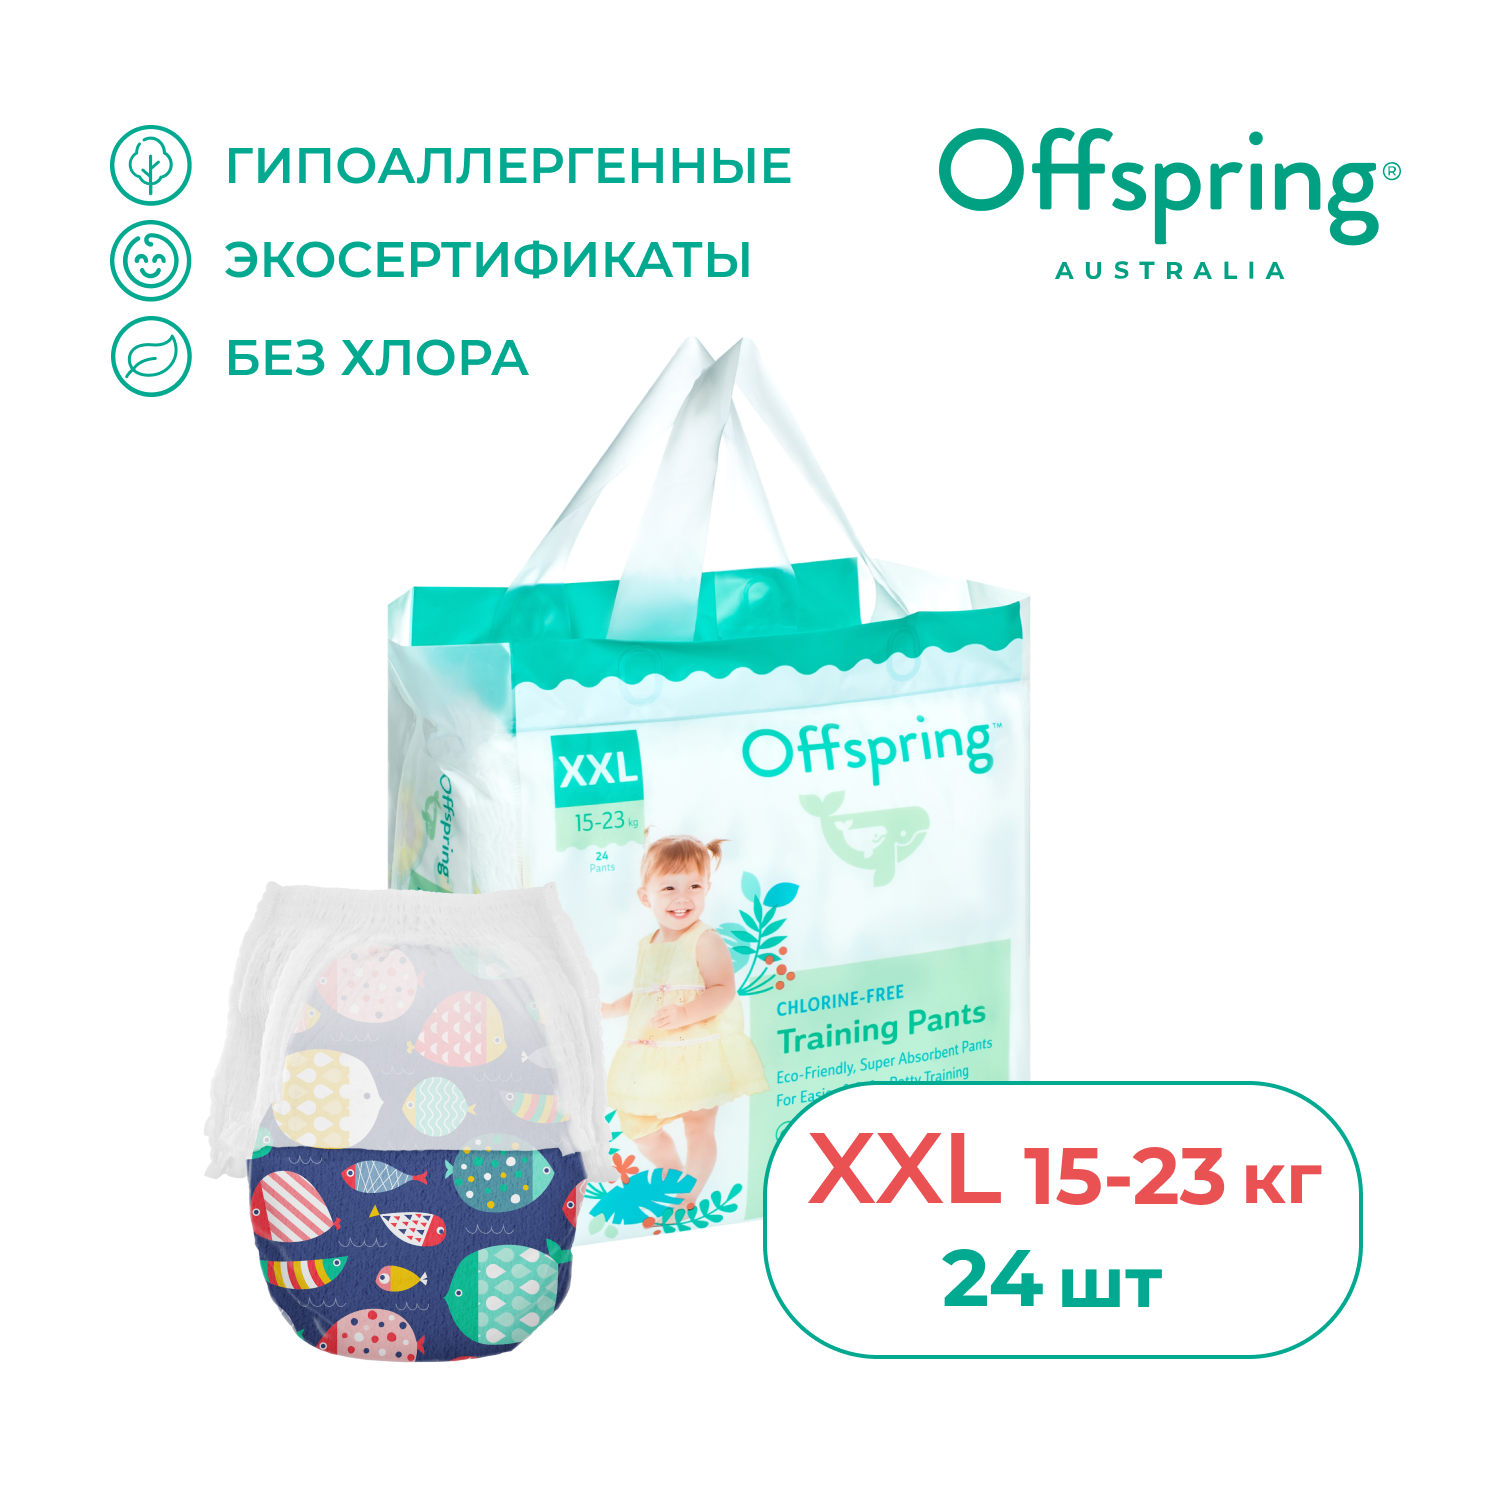 Трусики-подгузники Offspring, XXL 15-23 кг. 24 шт. расцветка Рыбки